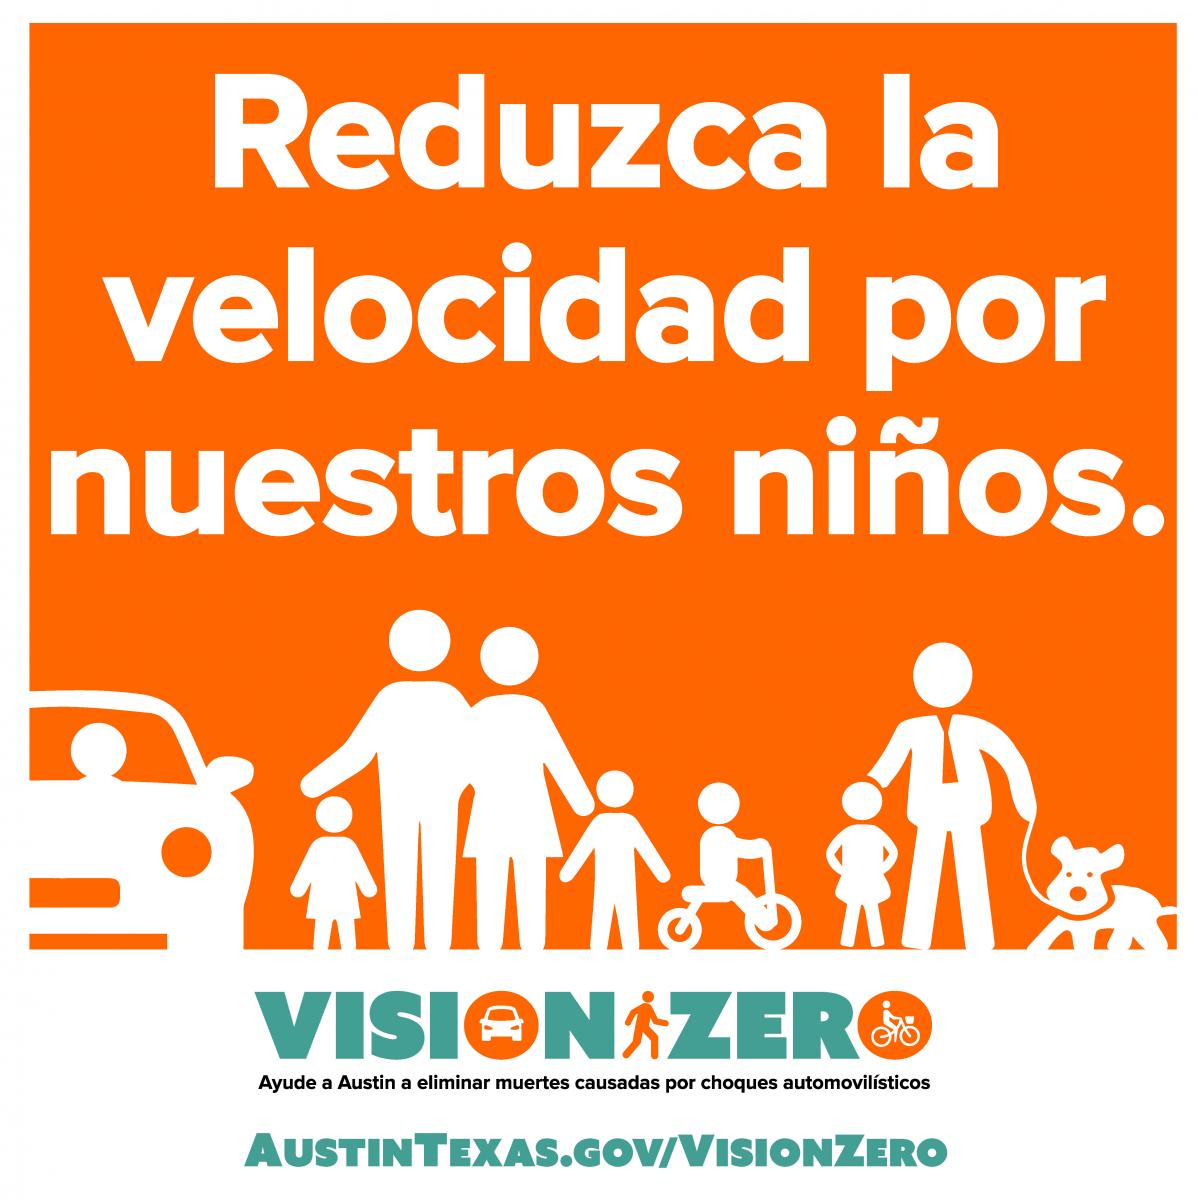 Reduzca la velocidad por nuestros ninos. Vision Zero. Ayude a Austin a eliminar muertes causadas por choques automovilisticos. AustinTexas.gov/VisionZero.